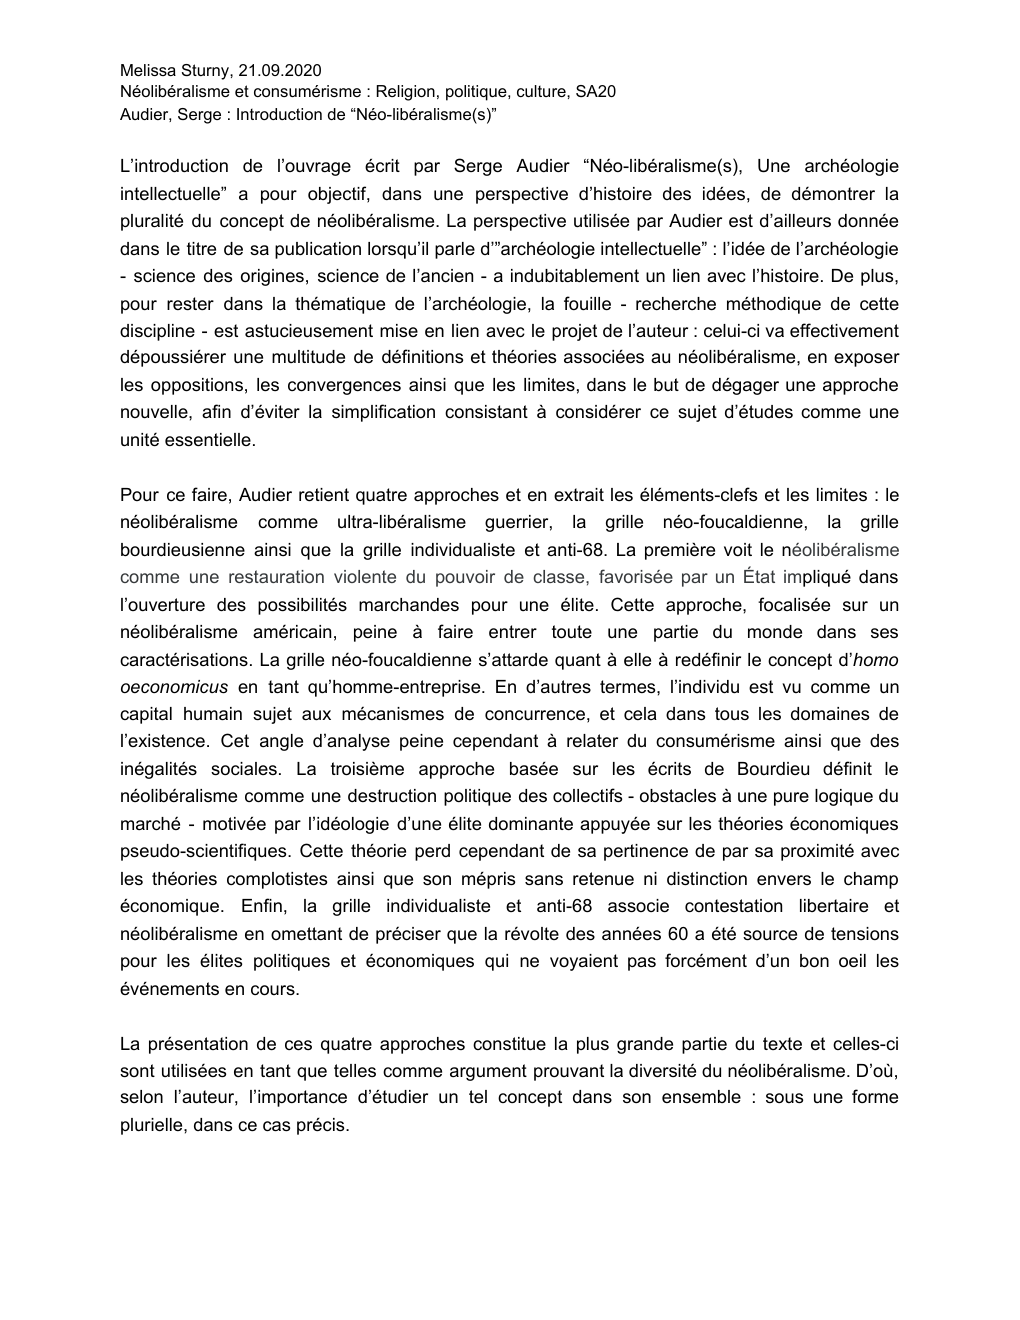 Prévisualisation du document Audier, Serge. "Néo-libéralisme(s)", introduction. Fiche de lecture